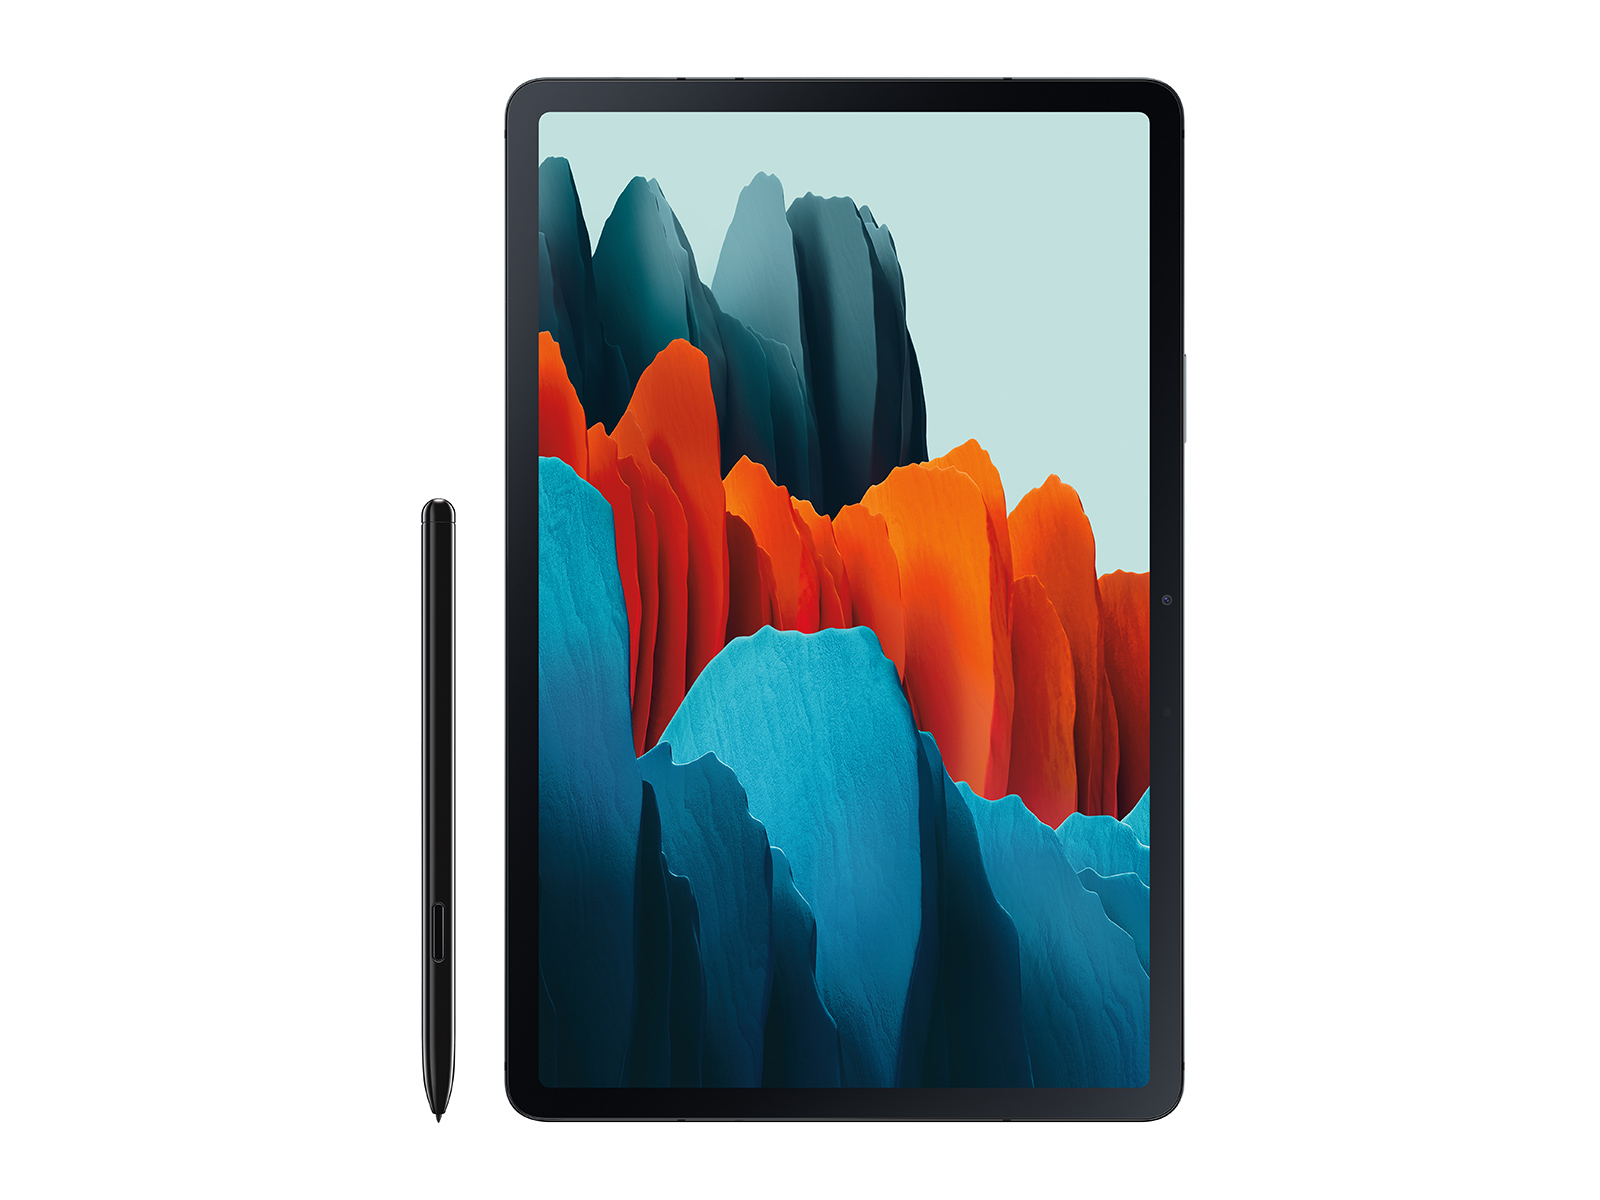 Galaxy Tab S7+, 256GB, Mystic Black Tablets - SM-T970NZKEXAR 